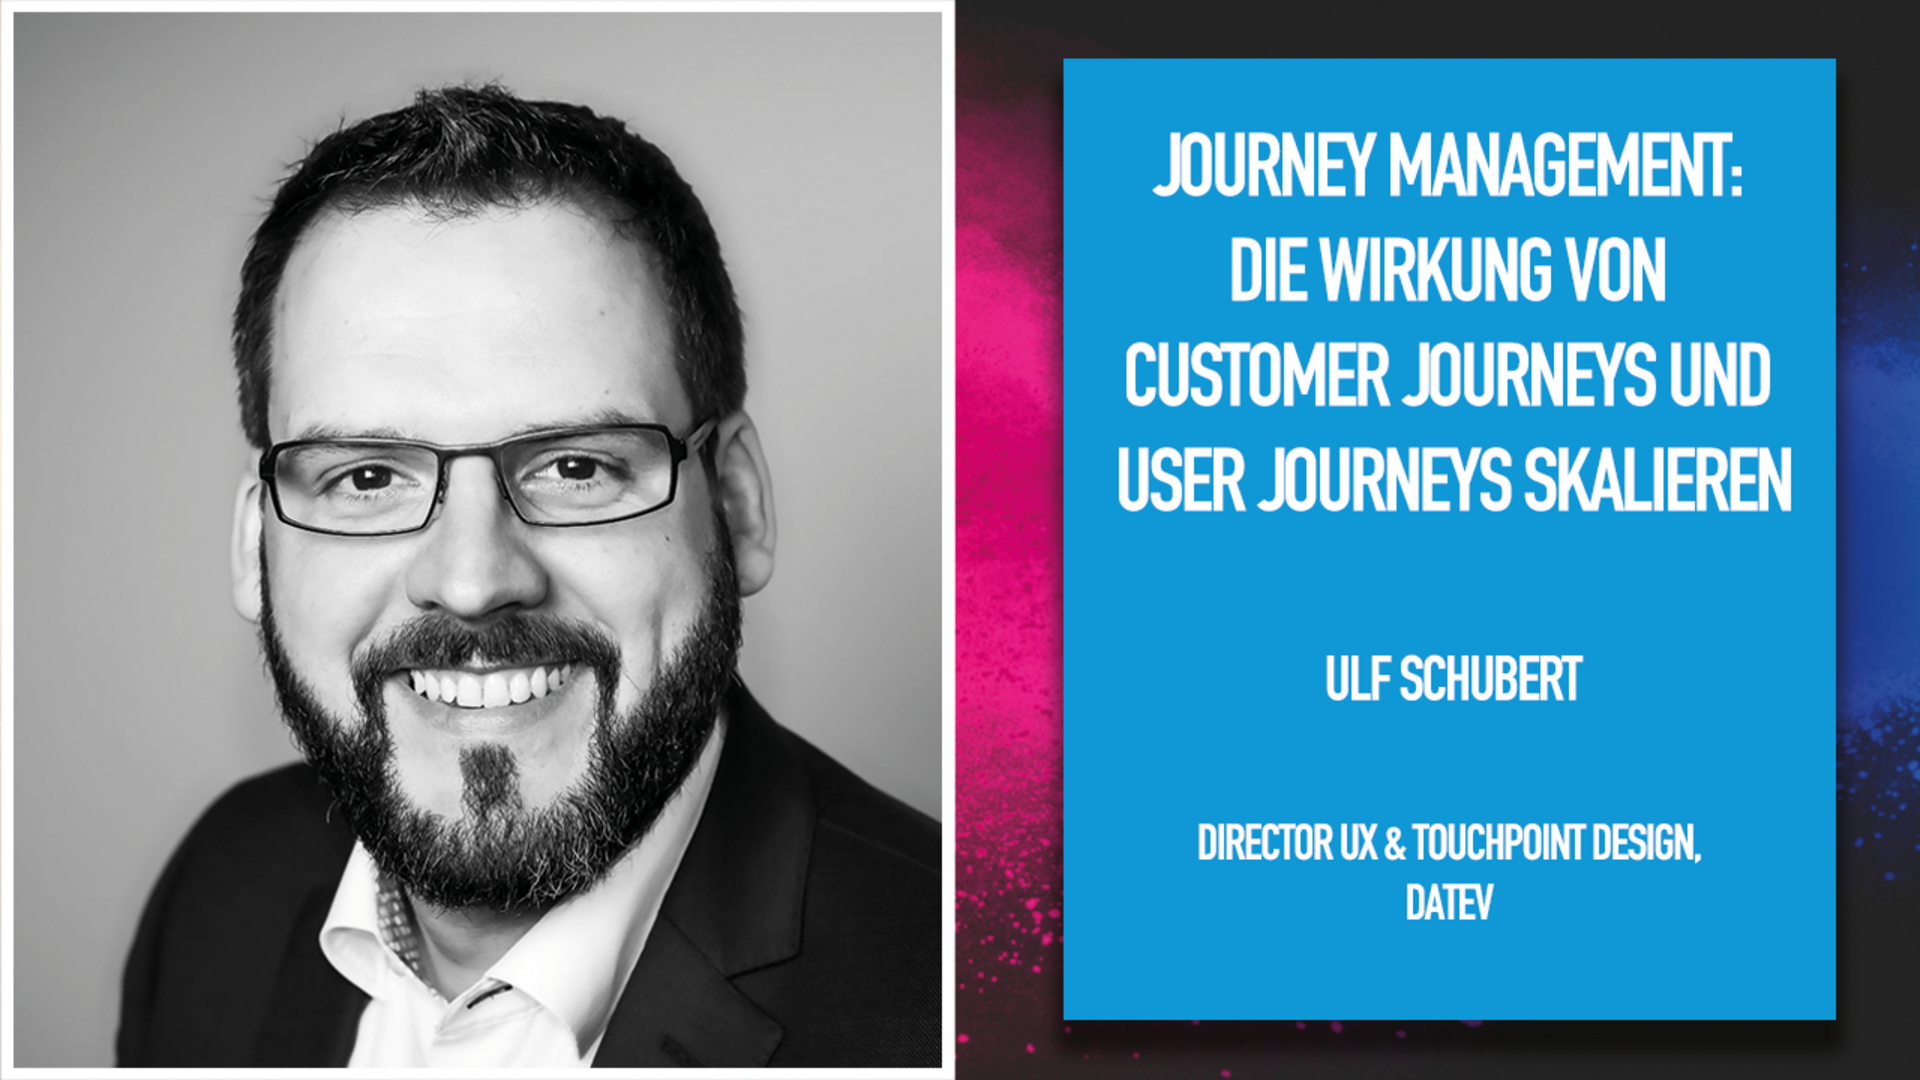 Journey Management: Die Wirkung von Customer Journeys und User Journeys skalieren